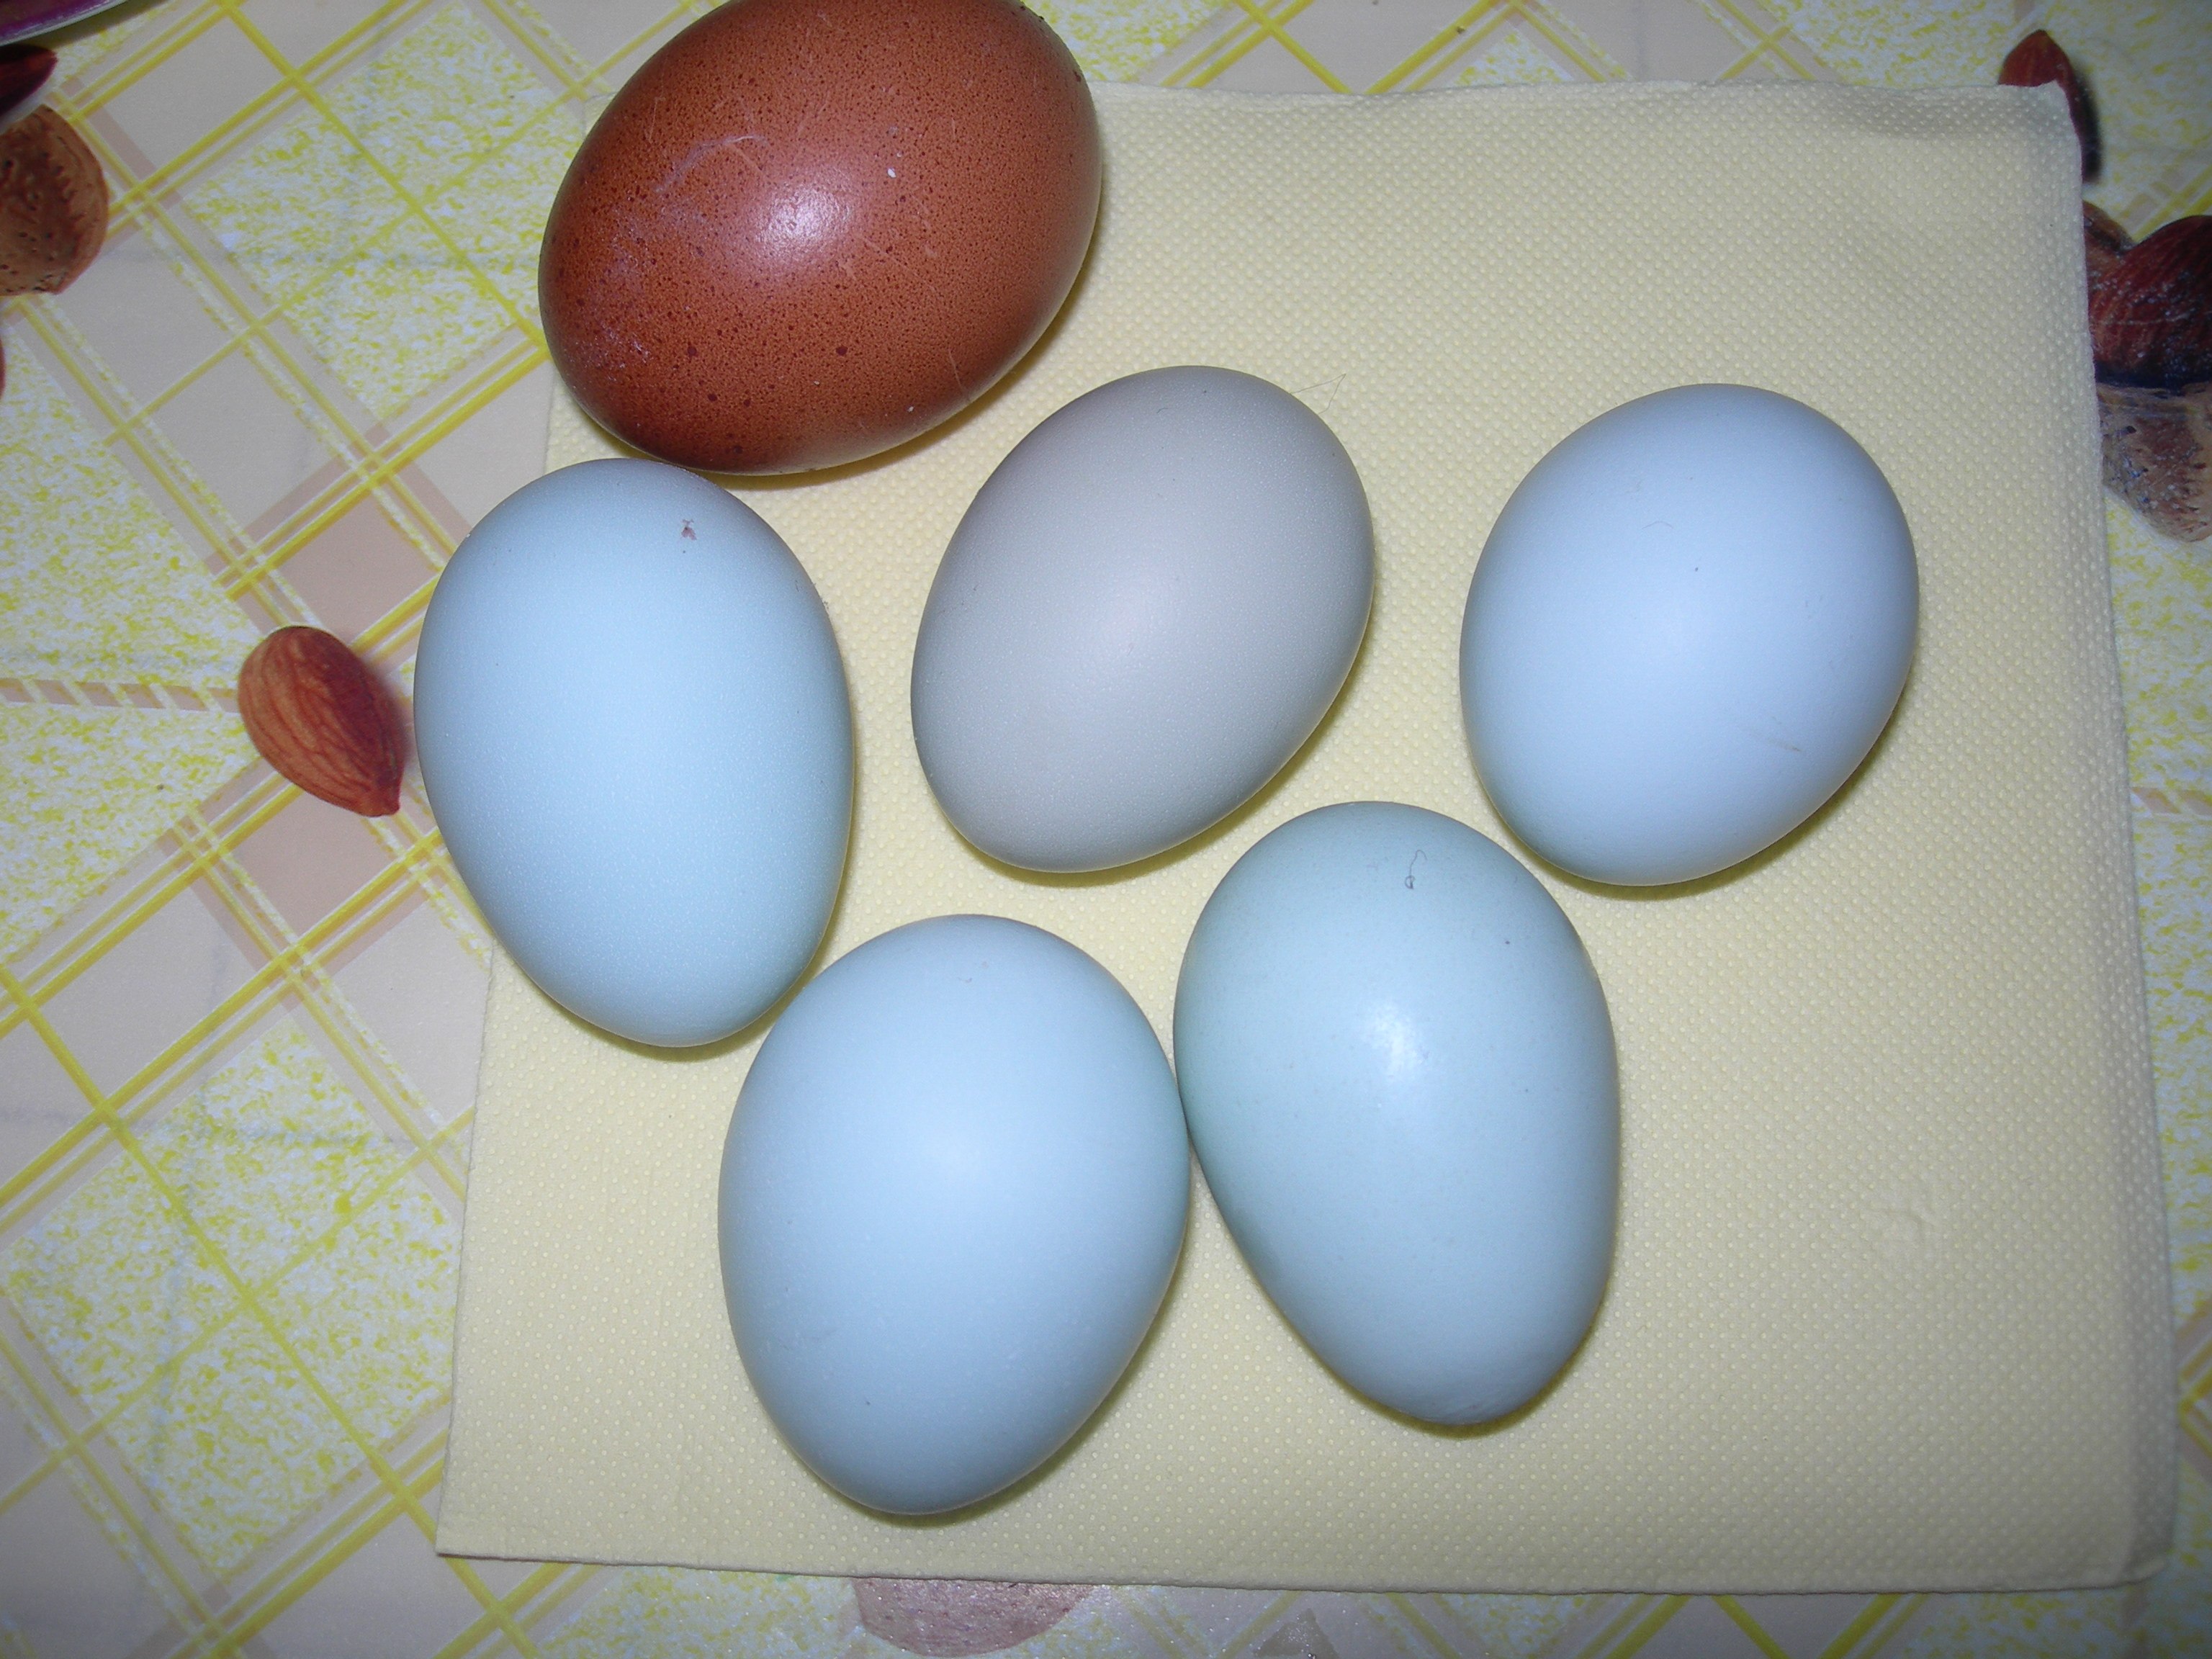 Фото кур несущих голубые яйца. Куры Араукана яйца. Араукана порода кур яйца. Куры Аракуан яйца. Куры породы Араукана яйца.